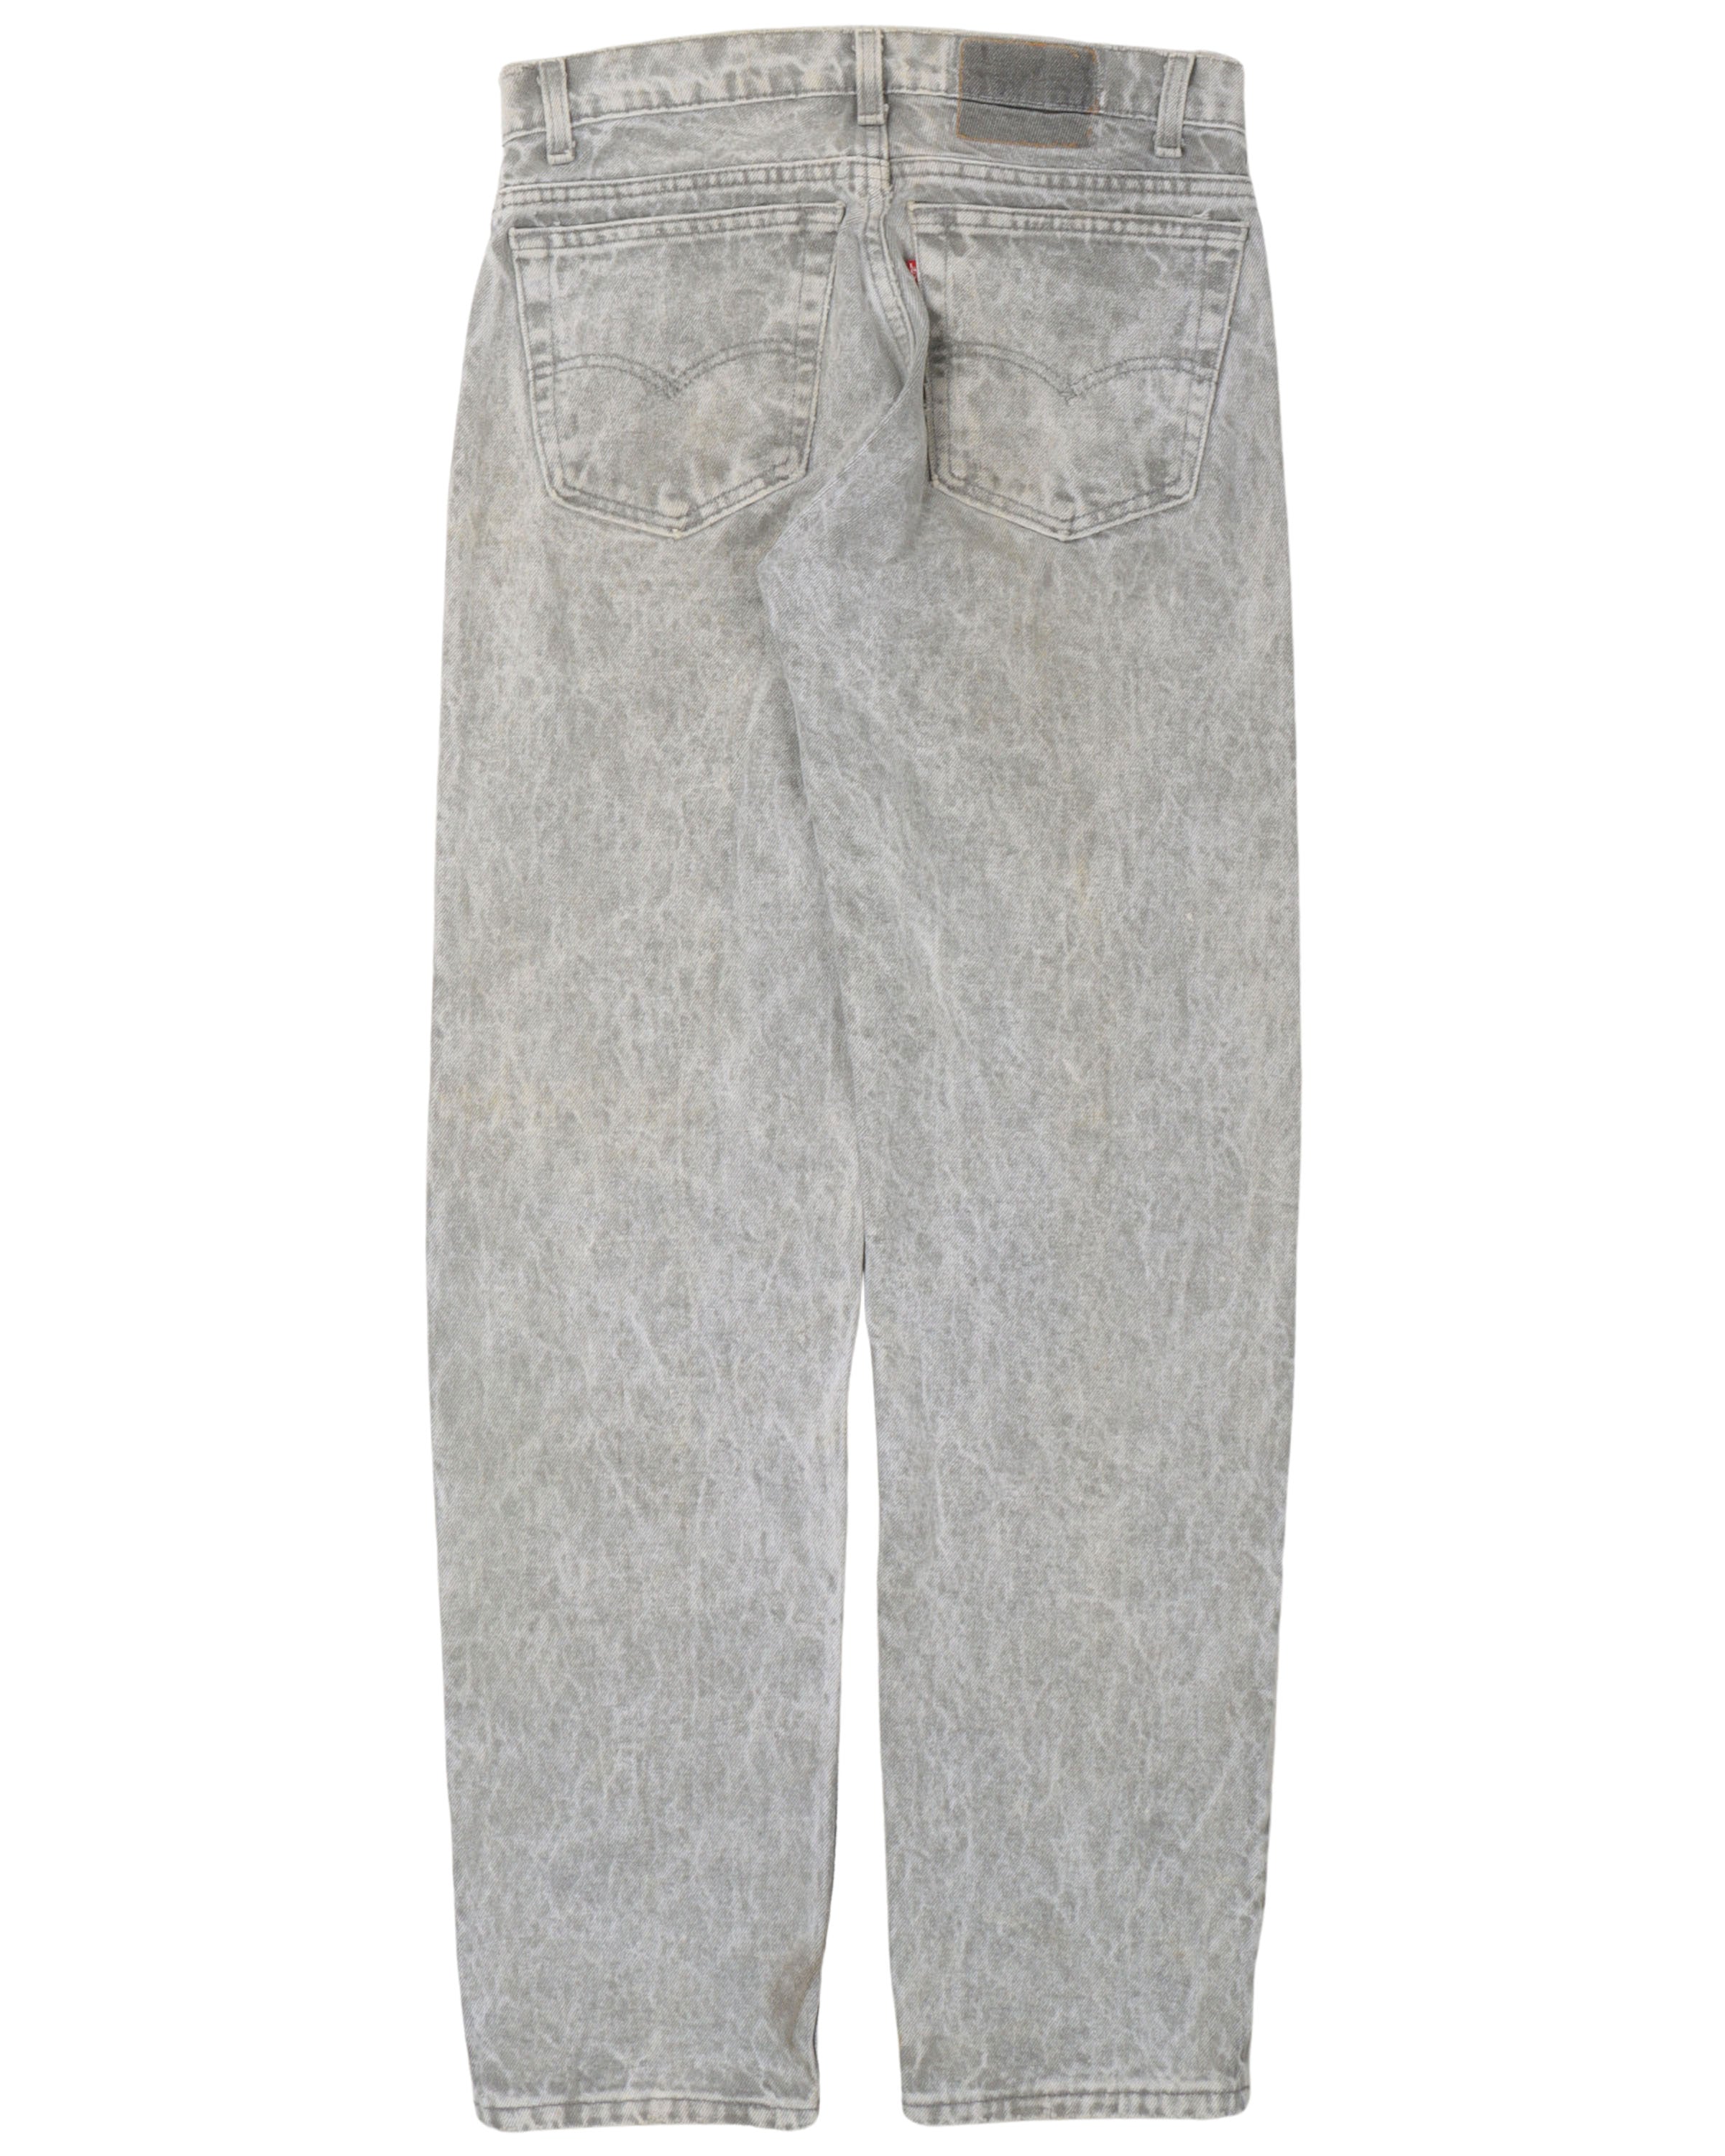 Levi's Light Grey Fade Jeans